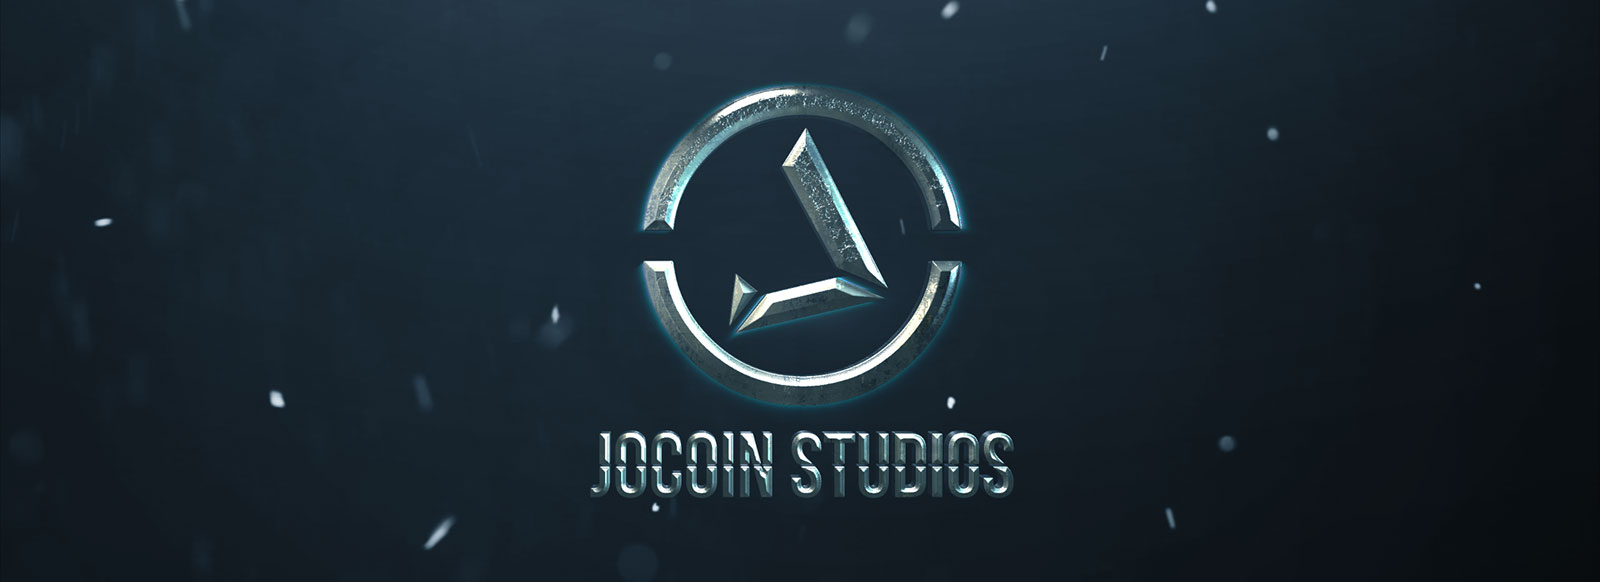 Jocoin Studios Portfolio